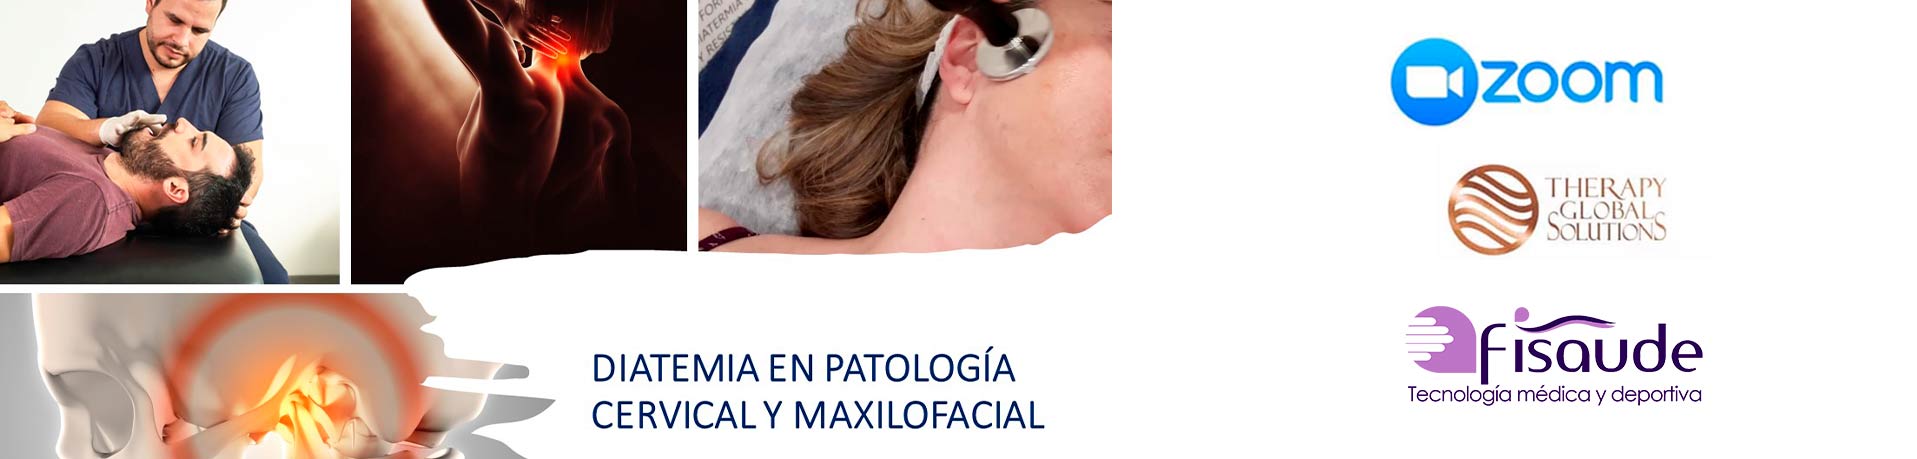 curso-diatermia-tratamiento-de-patologia-maxilofacial-cervical-1-julio